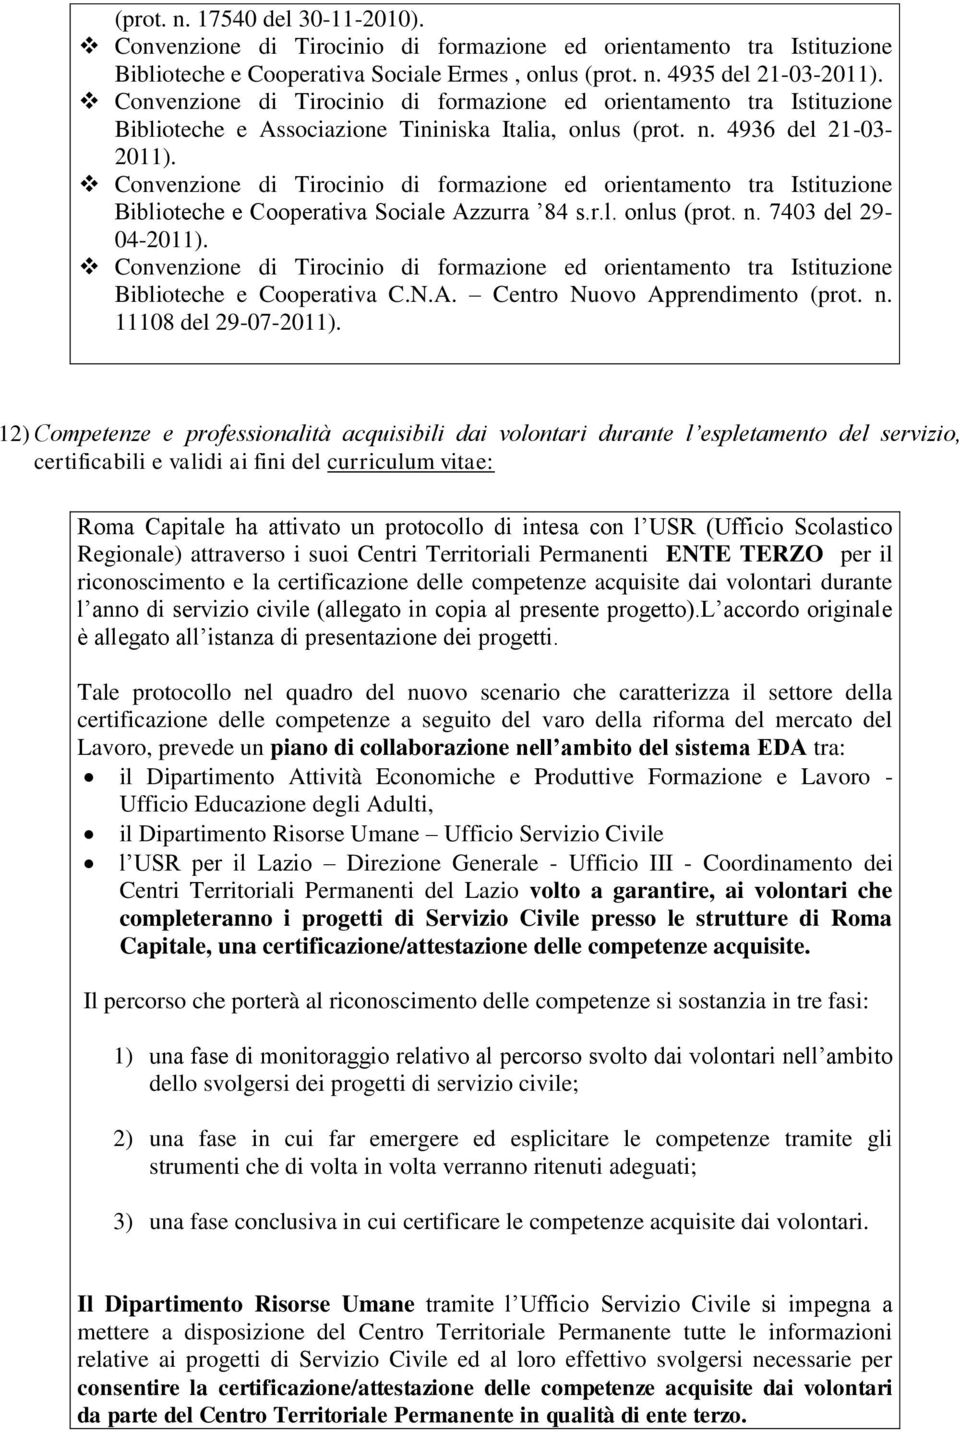 Convenzione di Tirocinio di formazione ed orientamento tra Istituzione Biblioteche e Cooperativa Sociale Azzurra 84 s.r.l. onlus (prot. n. 7403 del 29-04-2011).